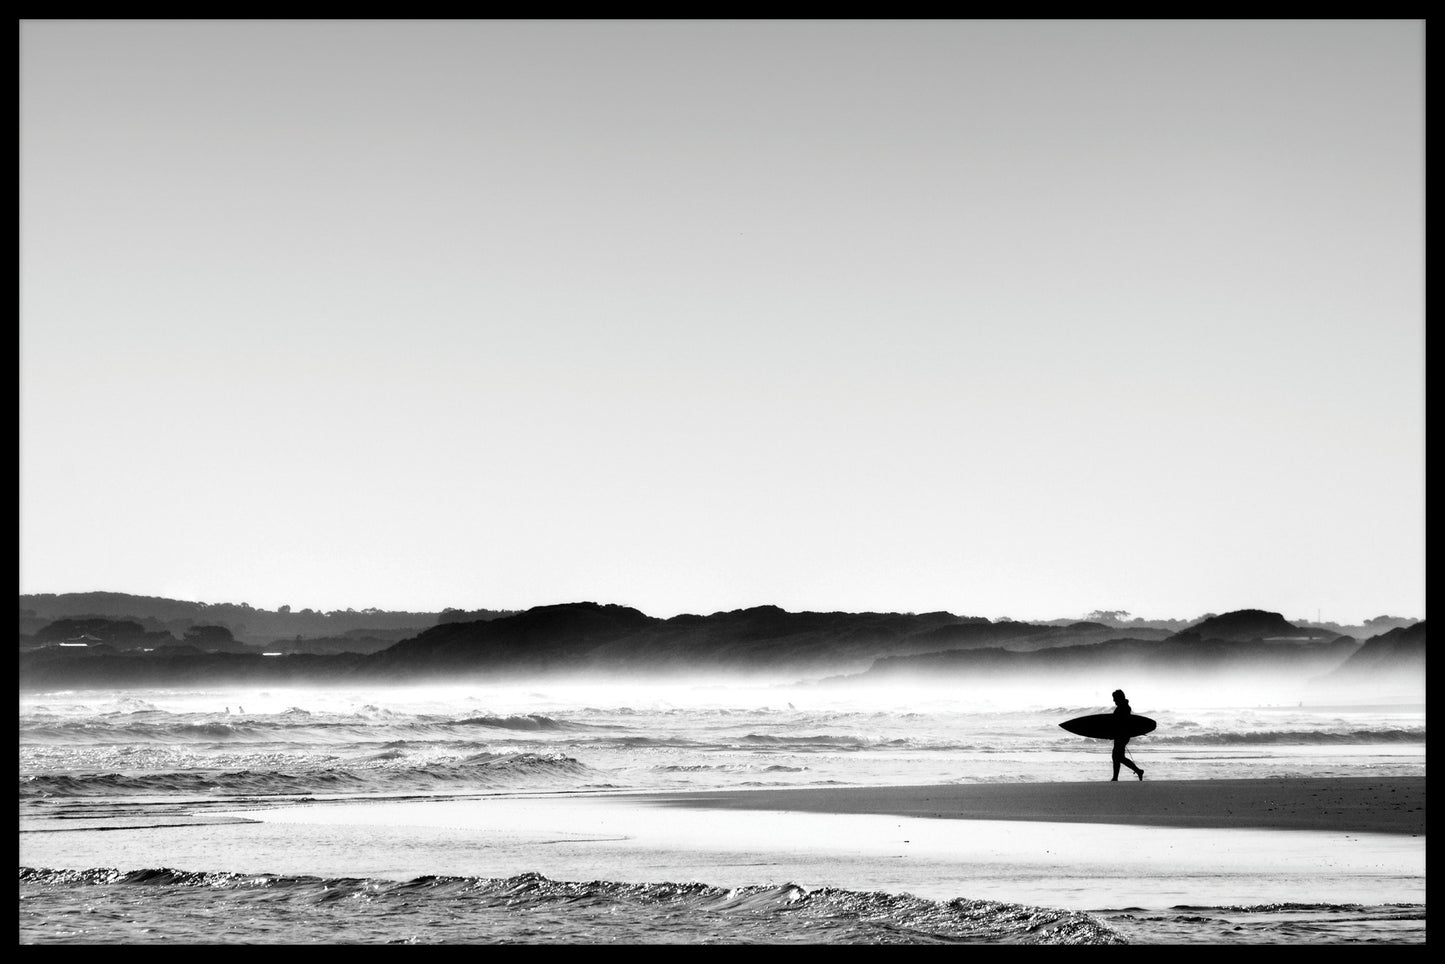  Beach Surfer-poster